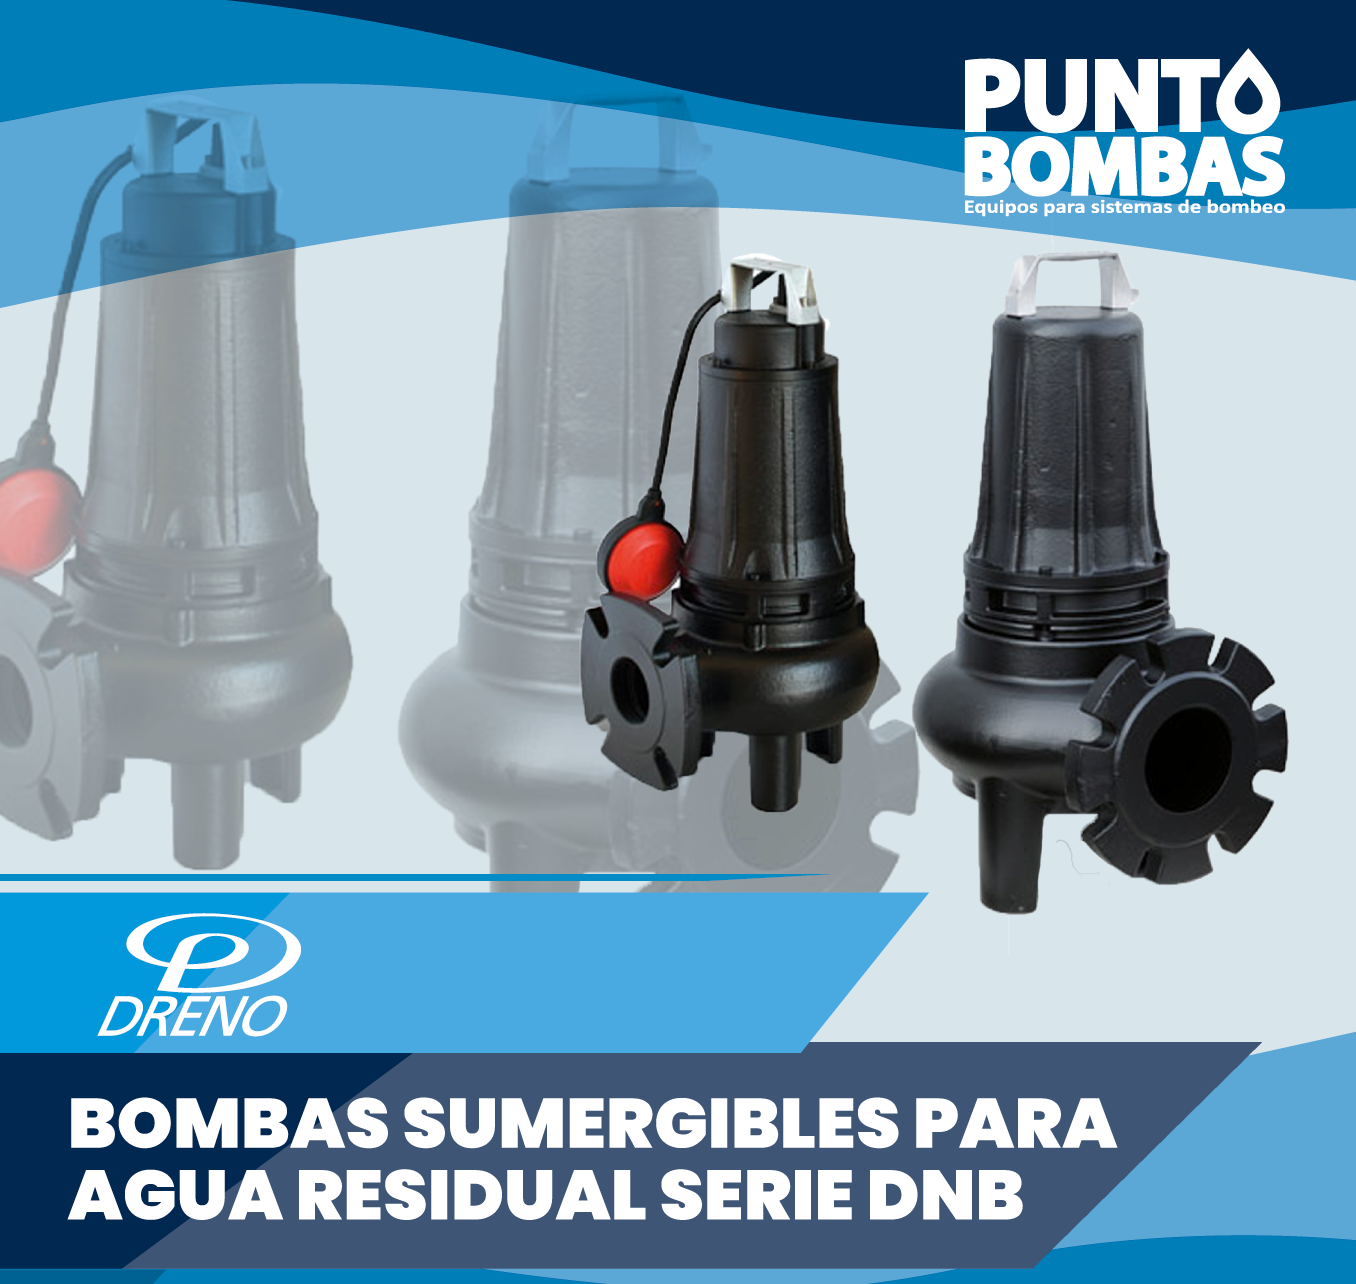 Bomba sumergible para agua residual serie DNB marca Dreno – Punto Bombas